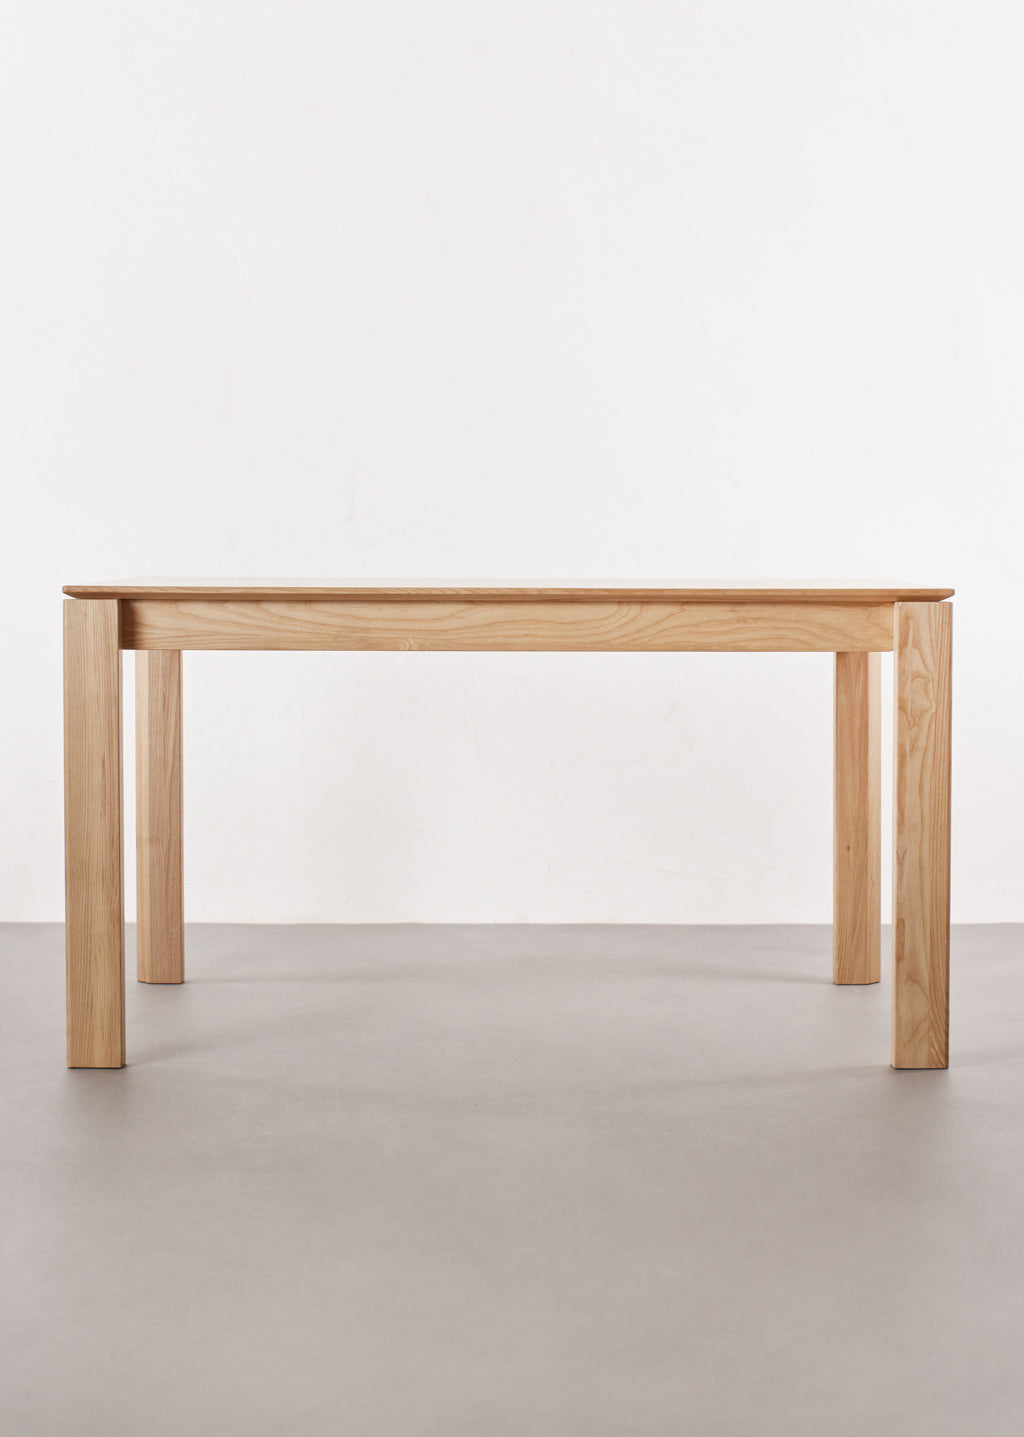 St-Laurent Wood Table